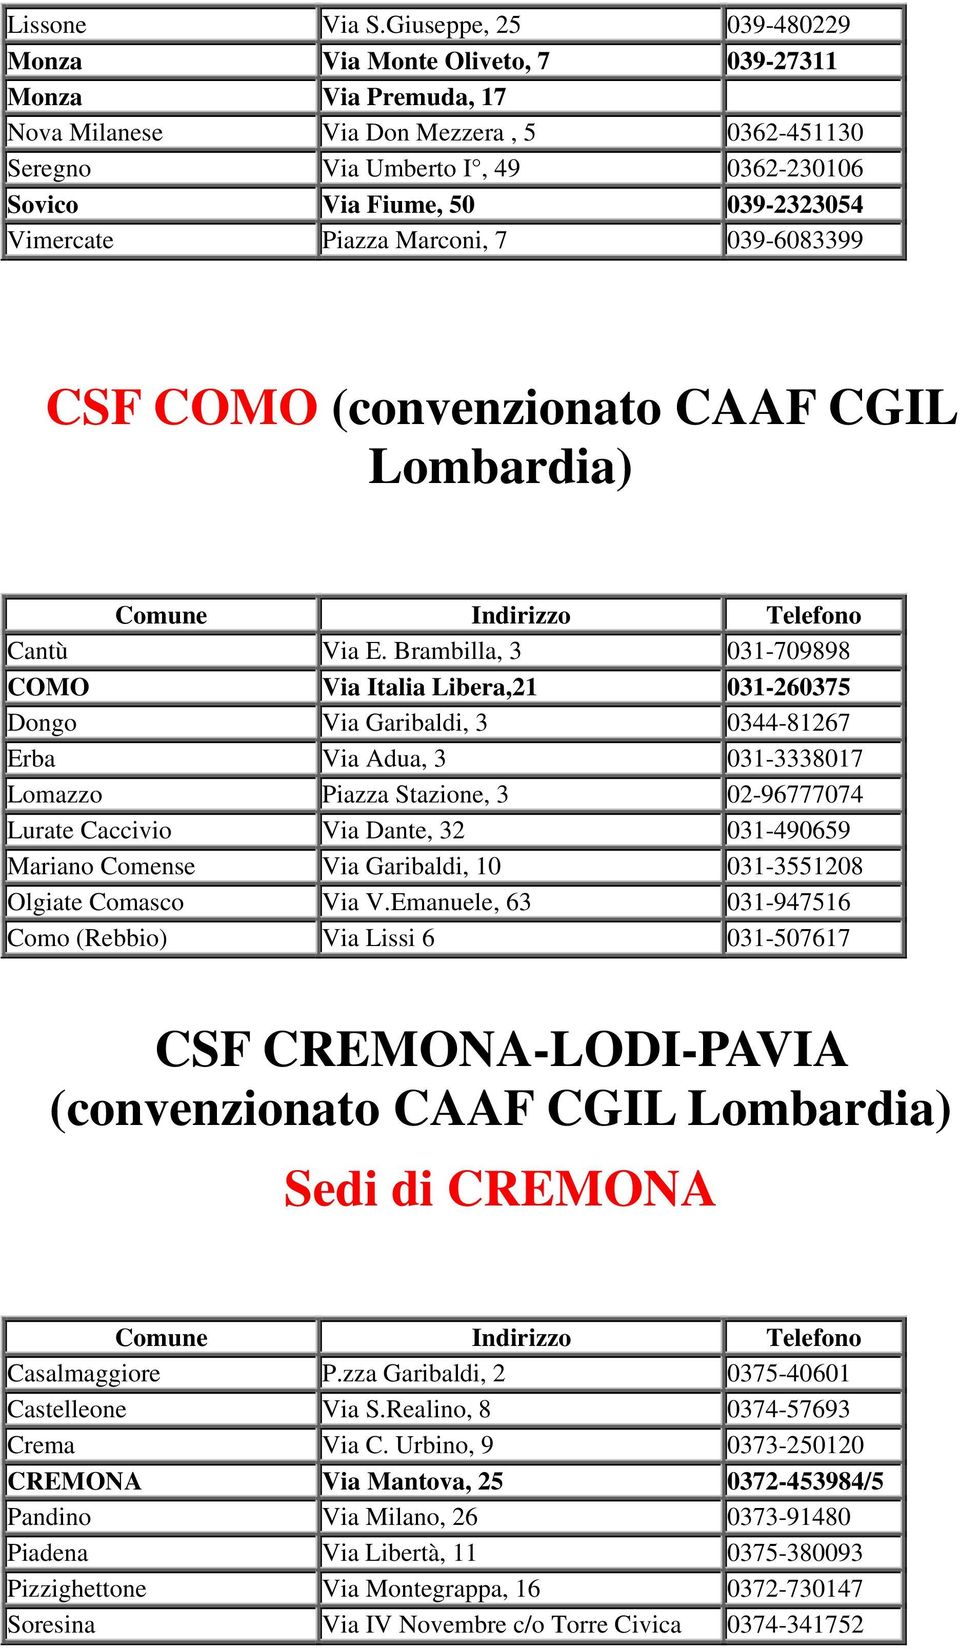 Vimercate Piazza Marconi, 7 039-6083399 CSF COMO (convenzionato CAAF CGIL Lombardia) Cantù Via E.